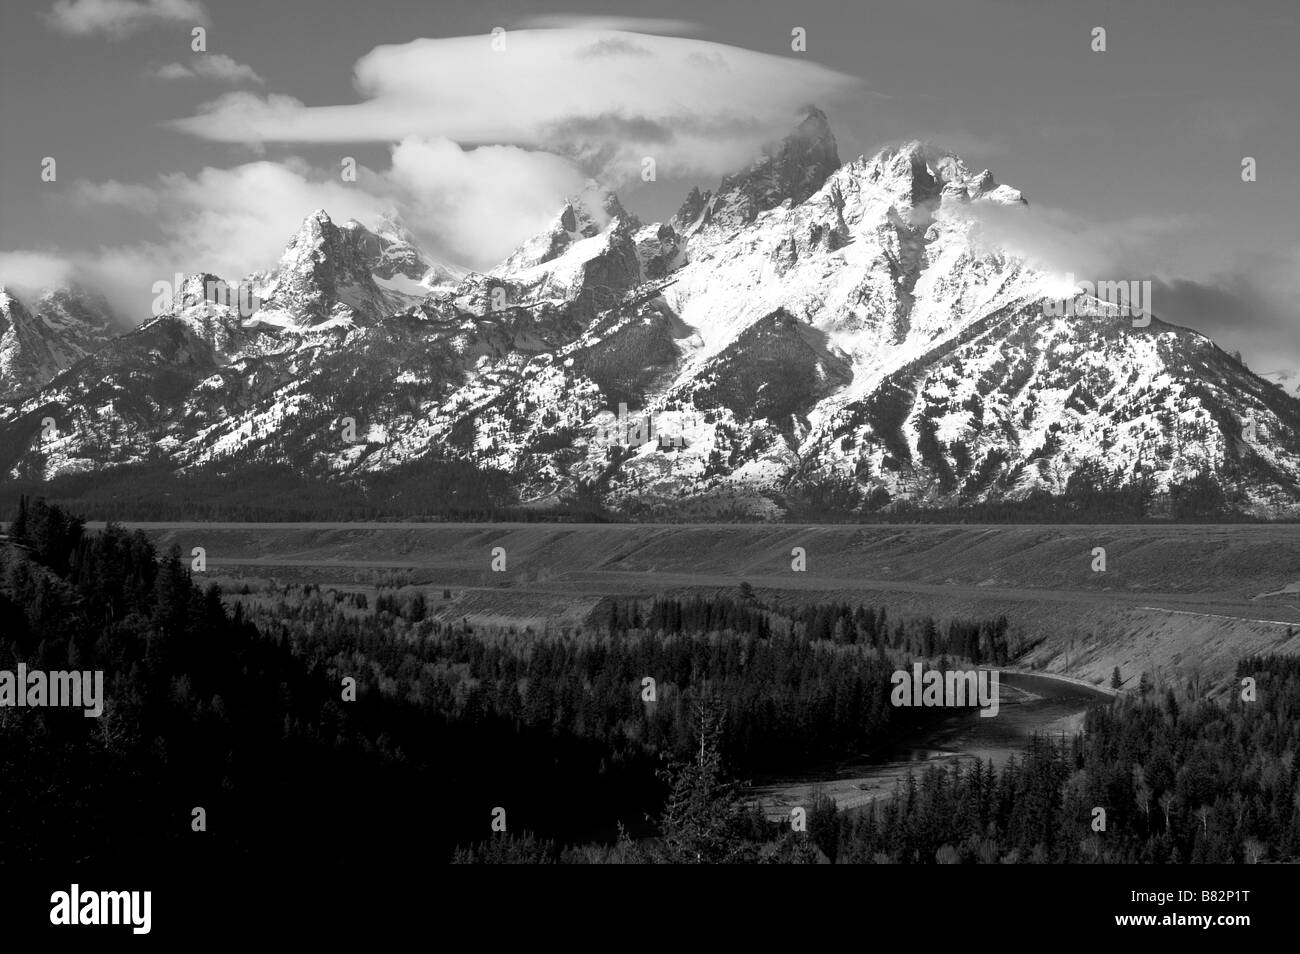 Le Grand Tetons partie de la chaîne de montagnes rocheuses Wyoming rocheuses et la rivière Snake avec Mt. Moran en noir et blanc Banque D'Images